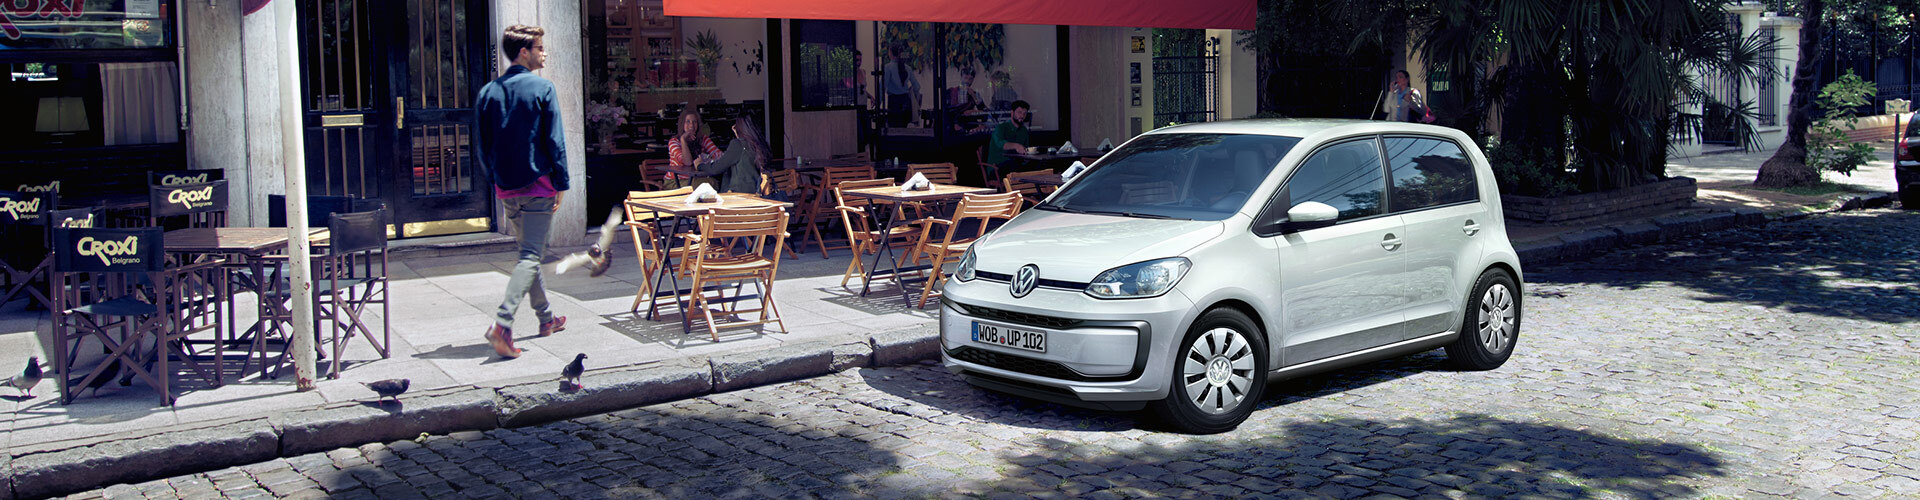 Volkswagen up! in weiß vor einem Cafe in der Stadt